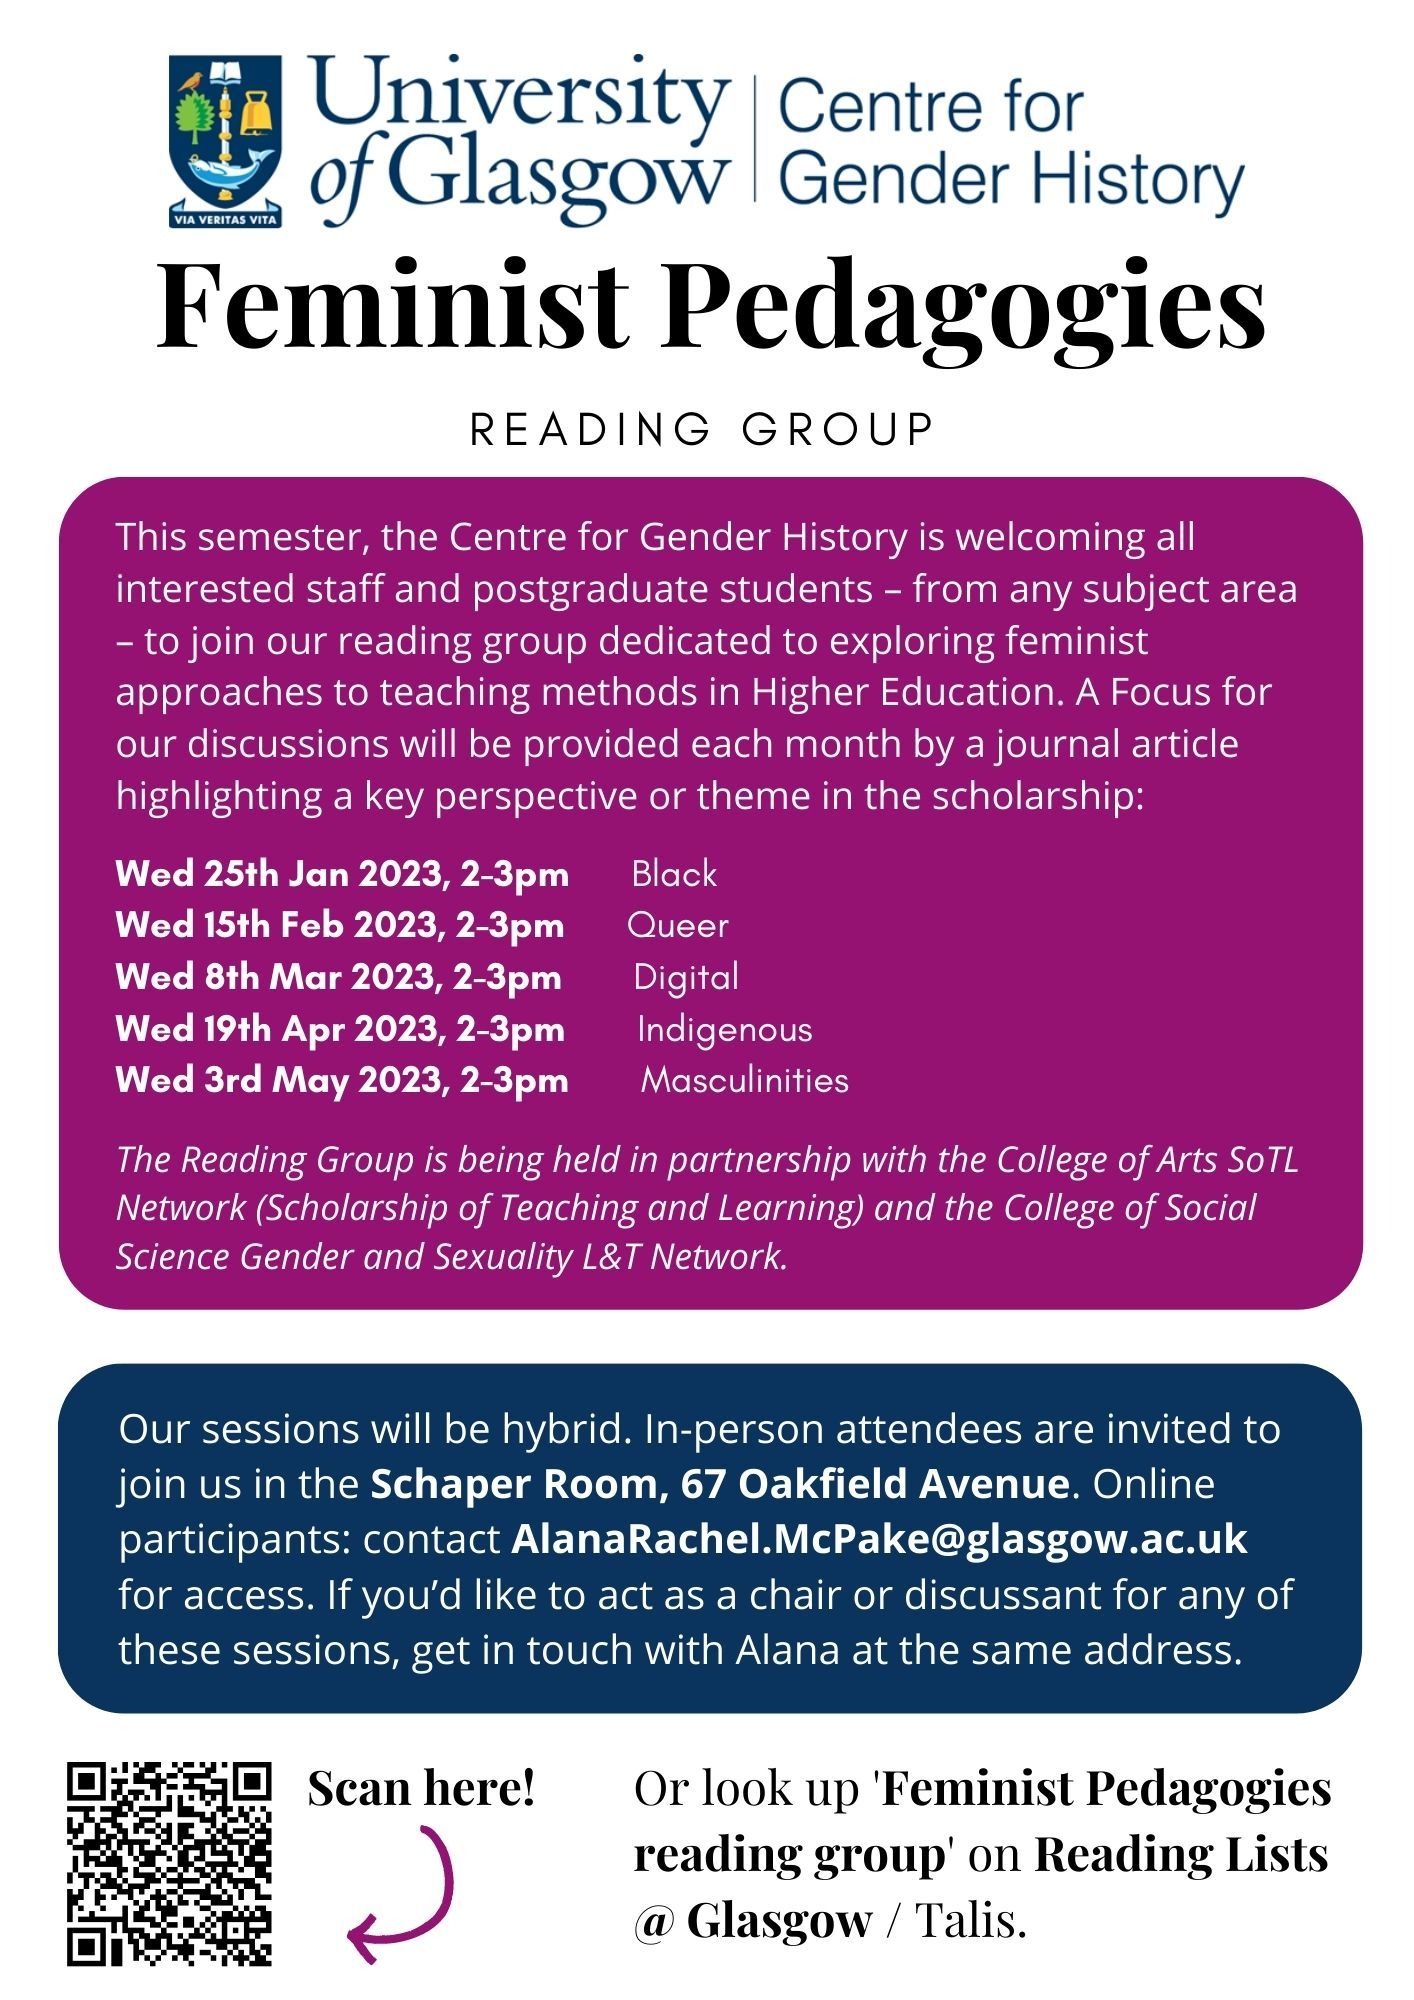 Feminist pedagogies poster 2022-23